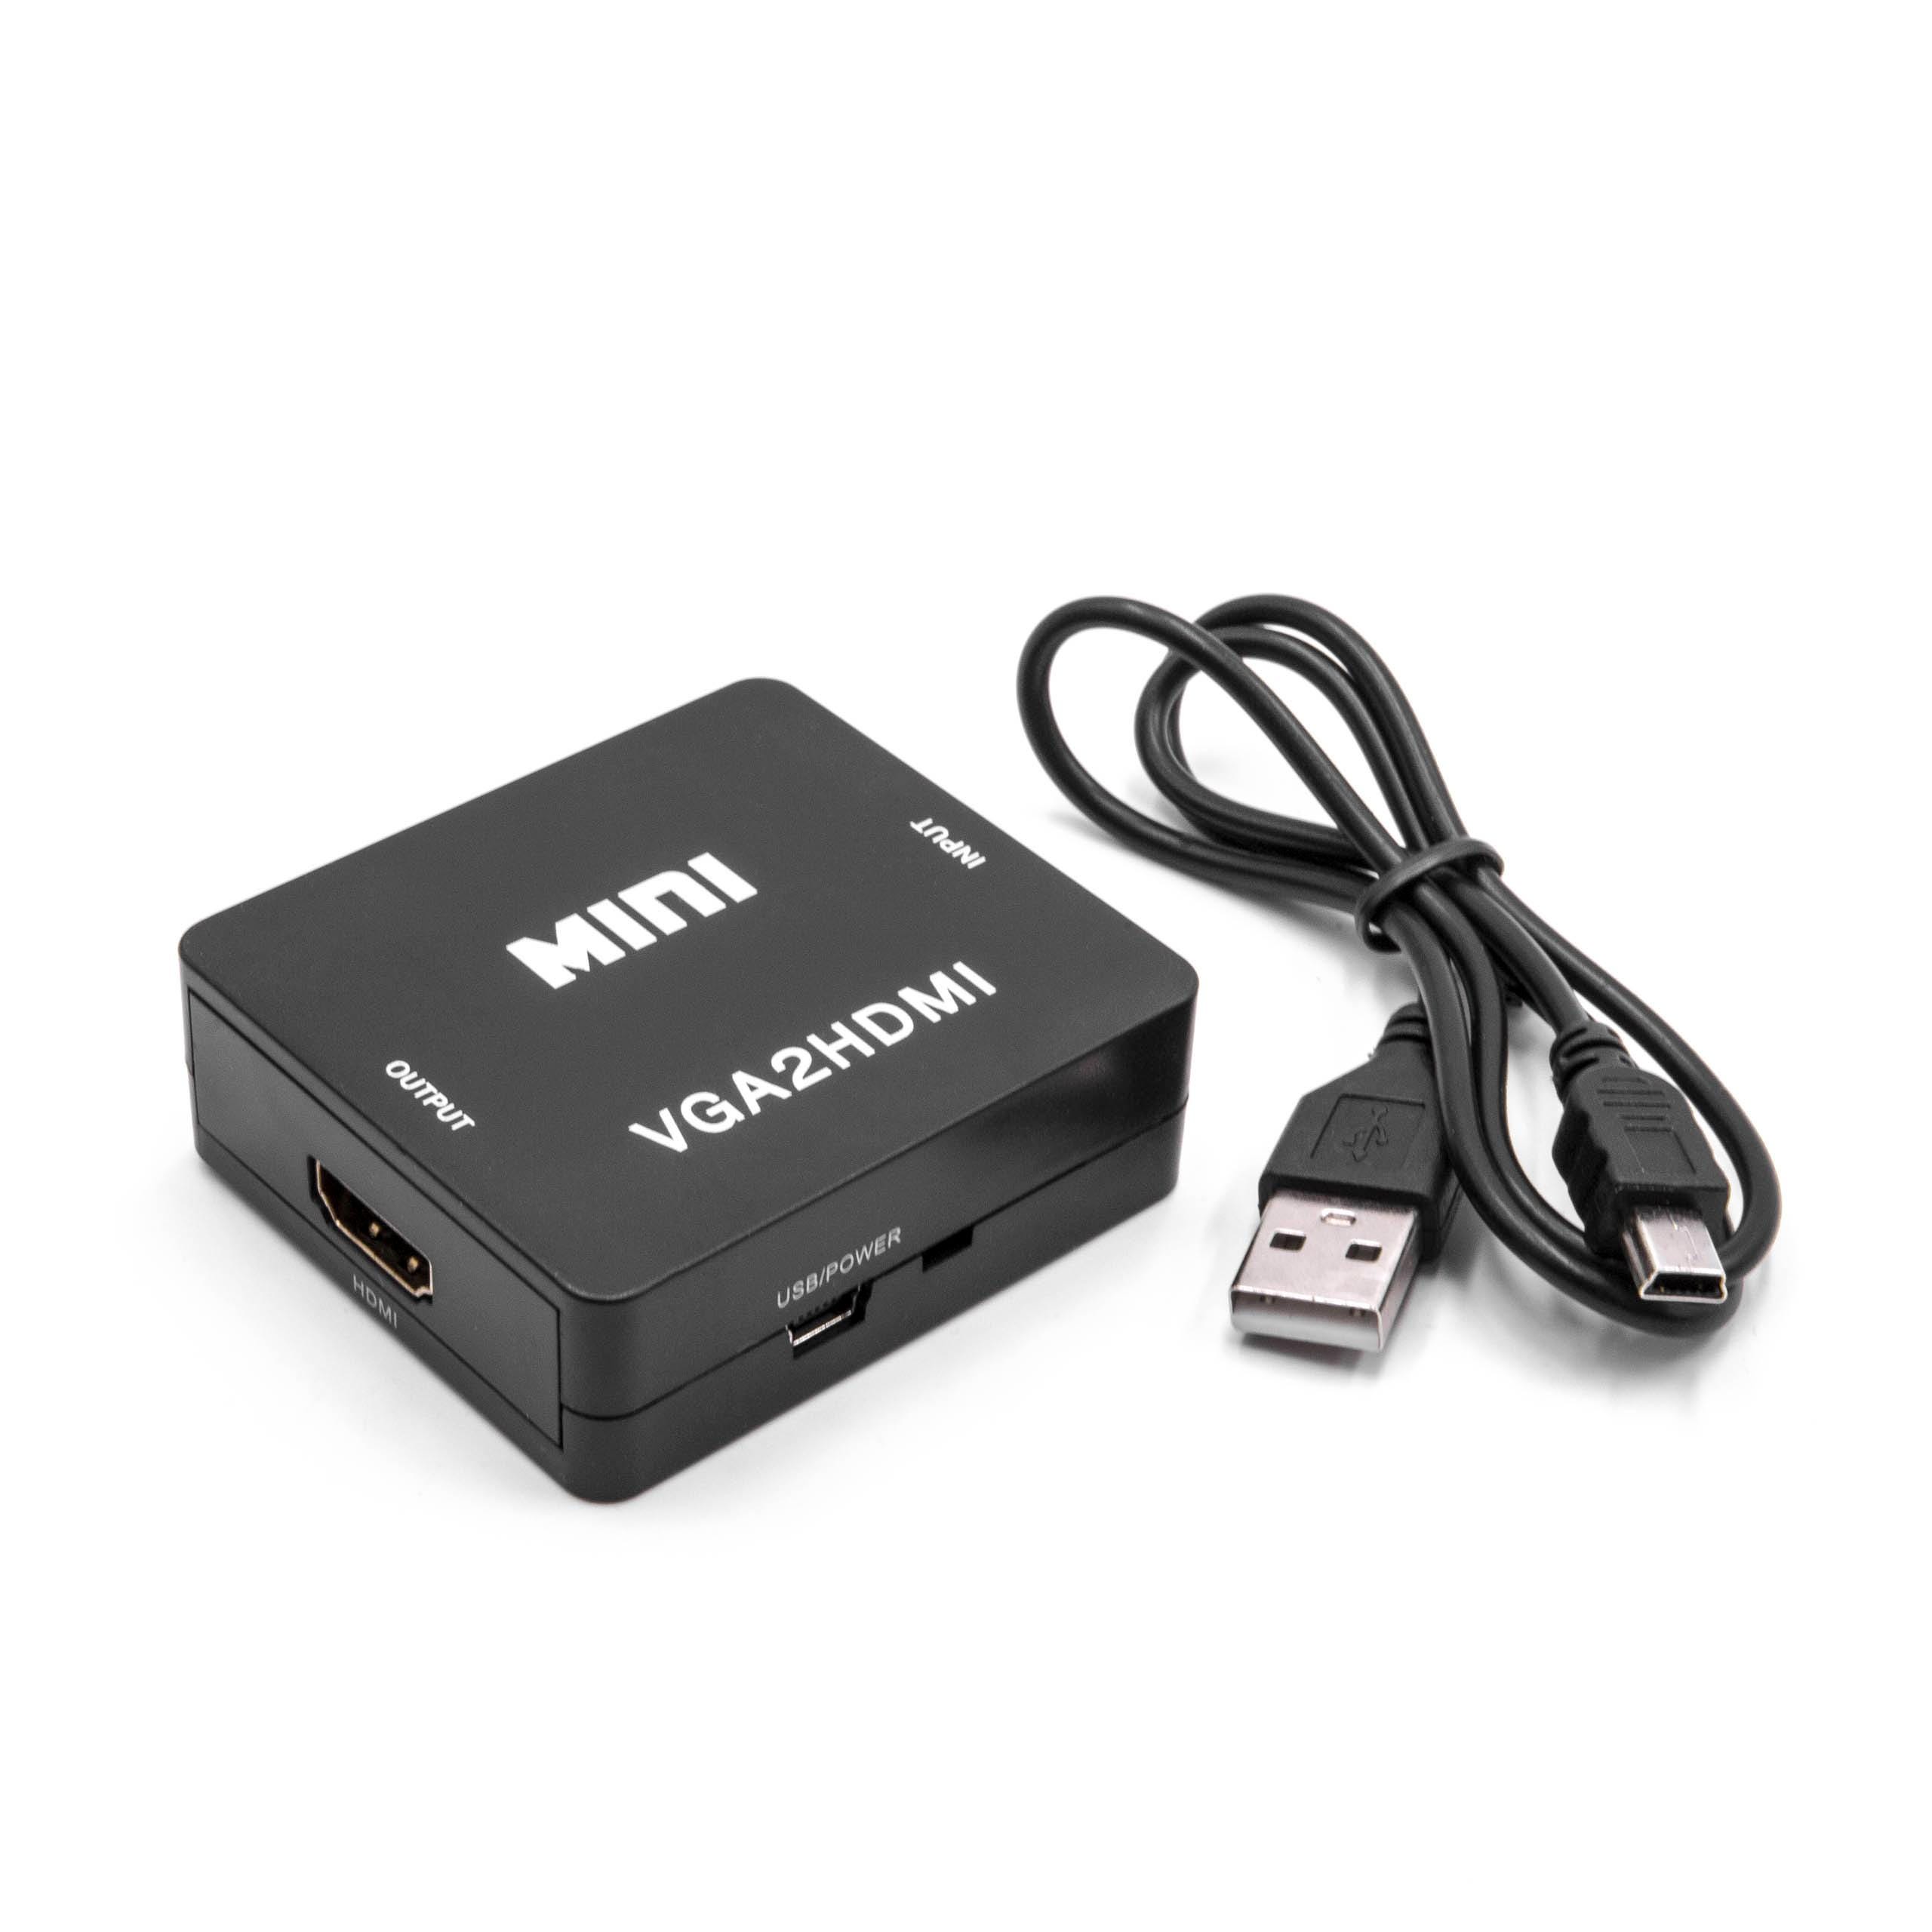 Câble audio vidéo VGA pour moniteur PC câble d'ordinateur portable